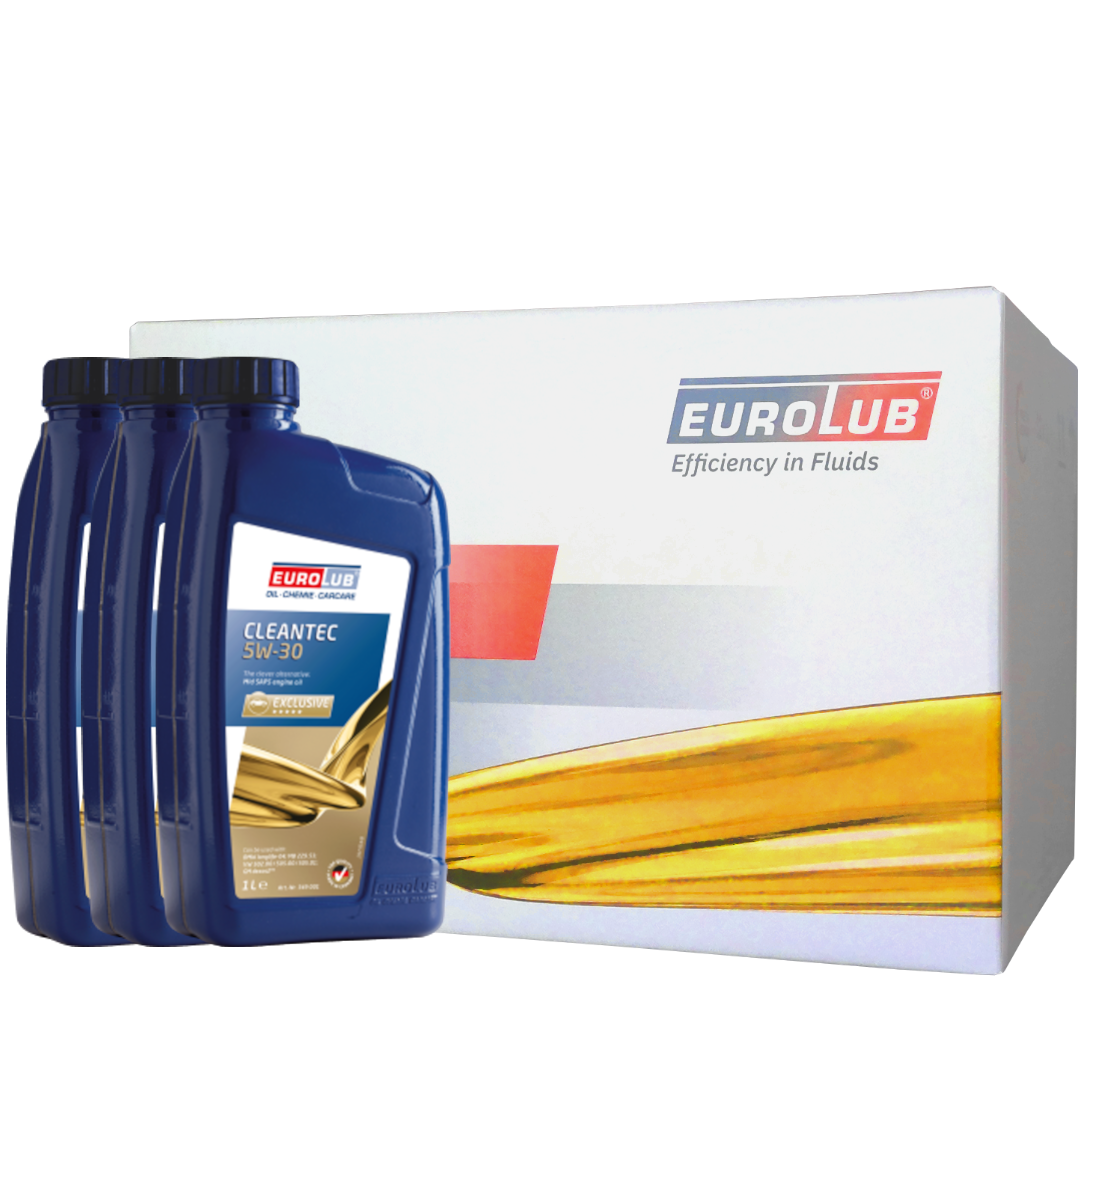 Eurolub Cleantec 5W30 (Mid Saps) - ab 5,80€